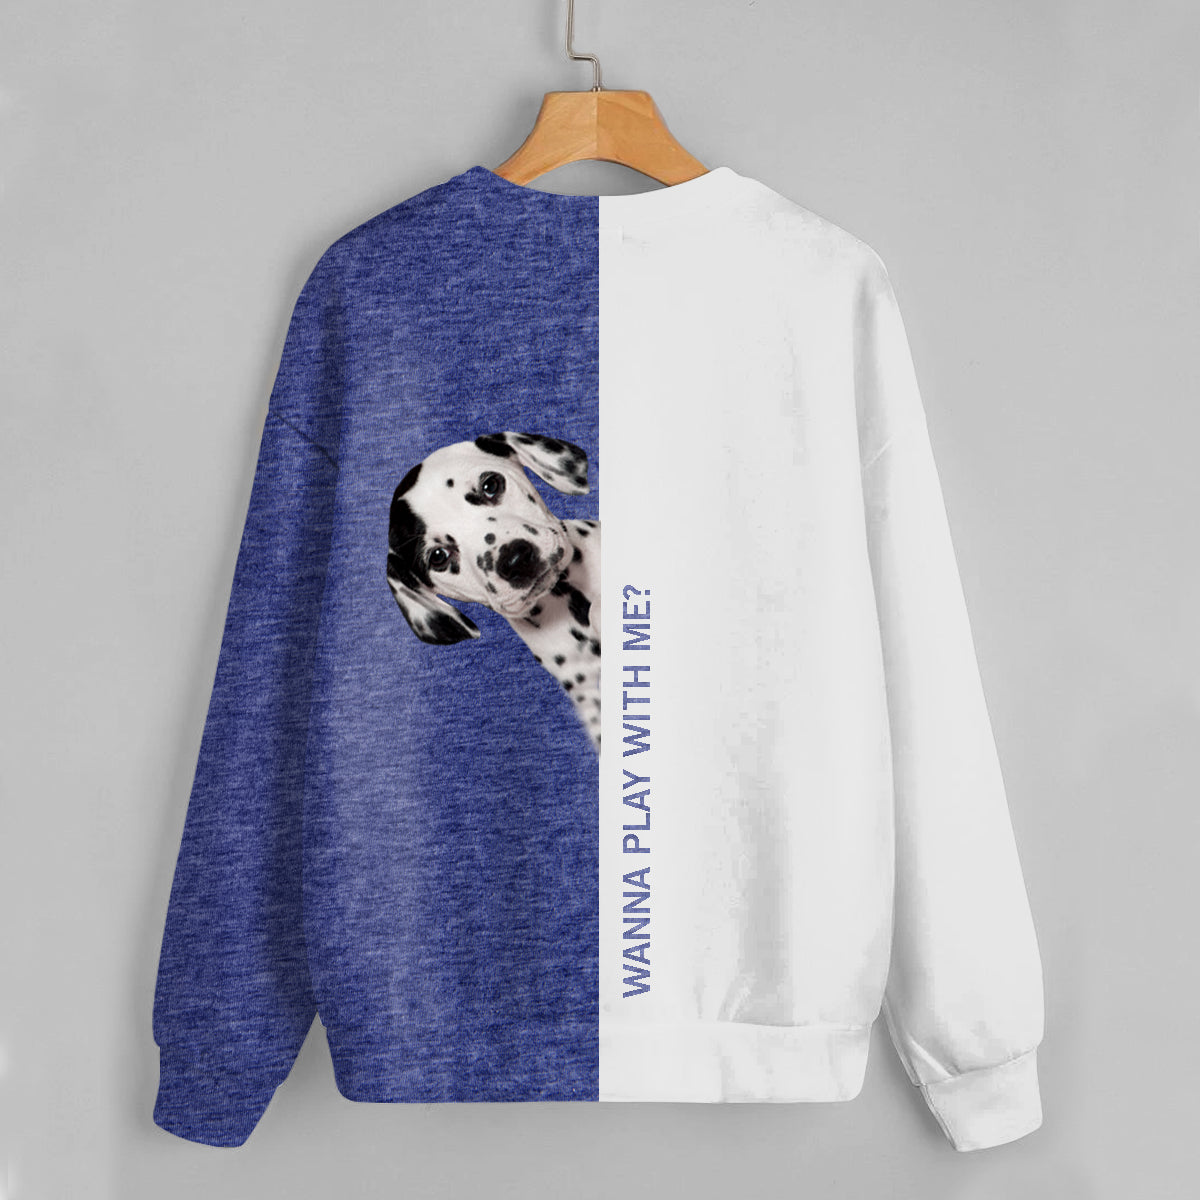 Lustige glückliche Zeit - Dalmatiner-Sweatshirt V1